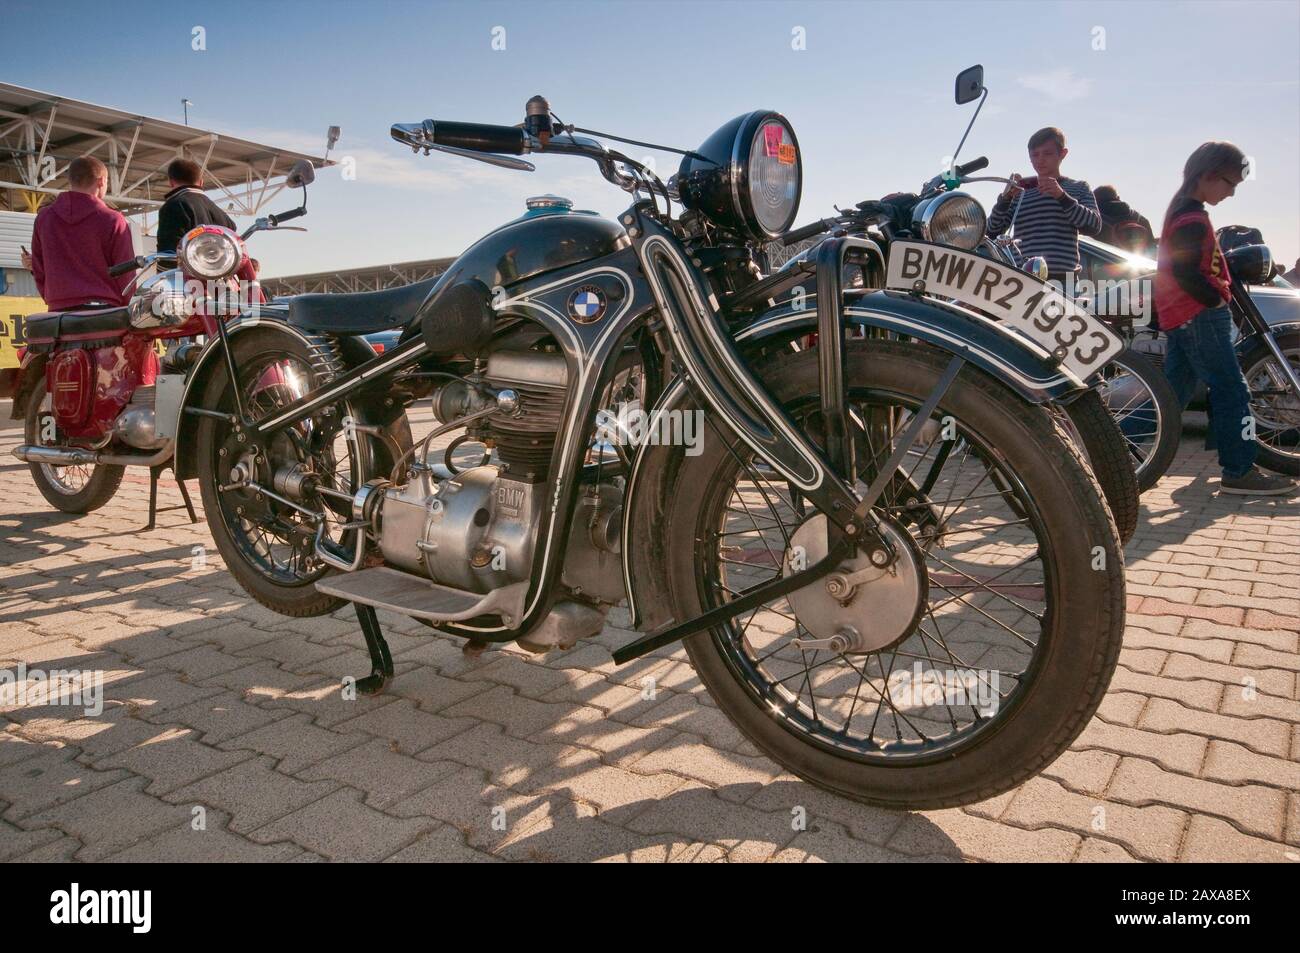 1933 BMW R2 Motorrad Oldtimer Bazar Messe in Breslau, Niederschlesien,  Polen Stockfotografie - Alamy